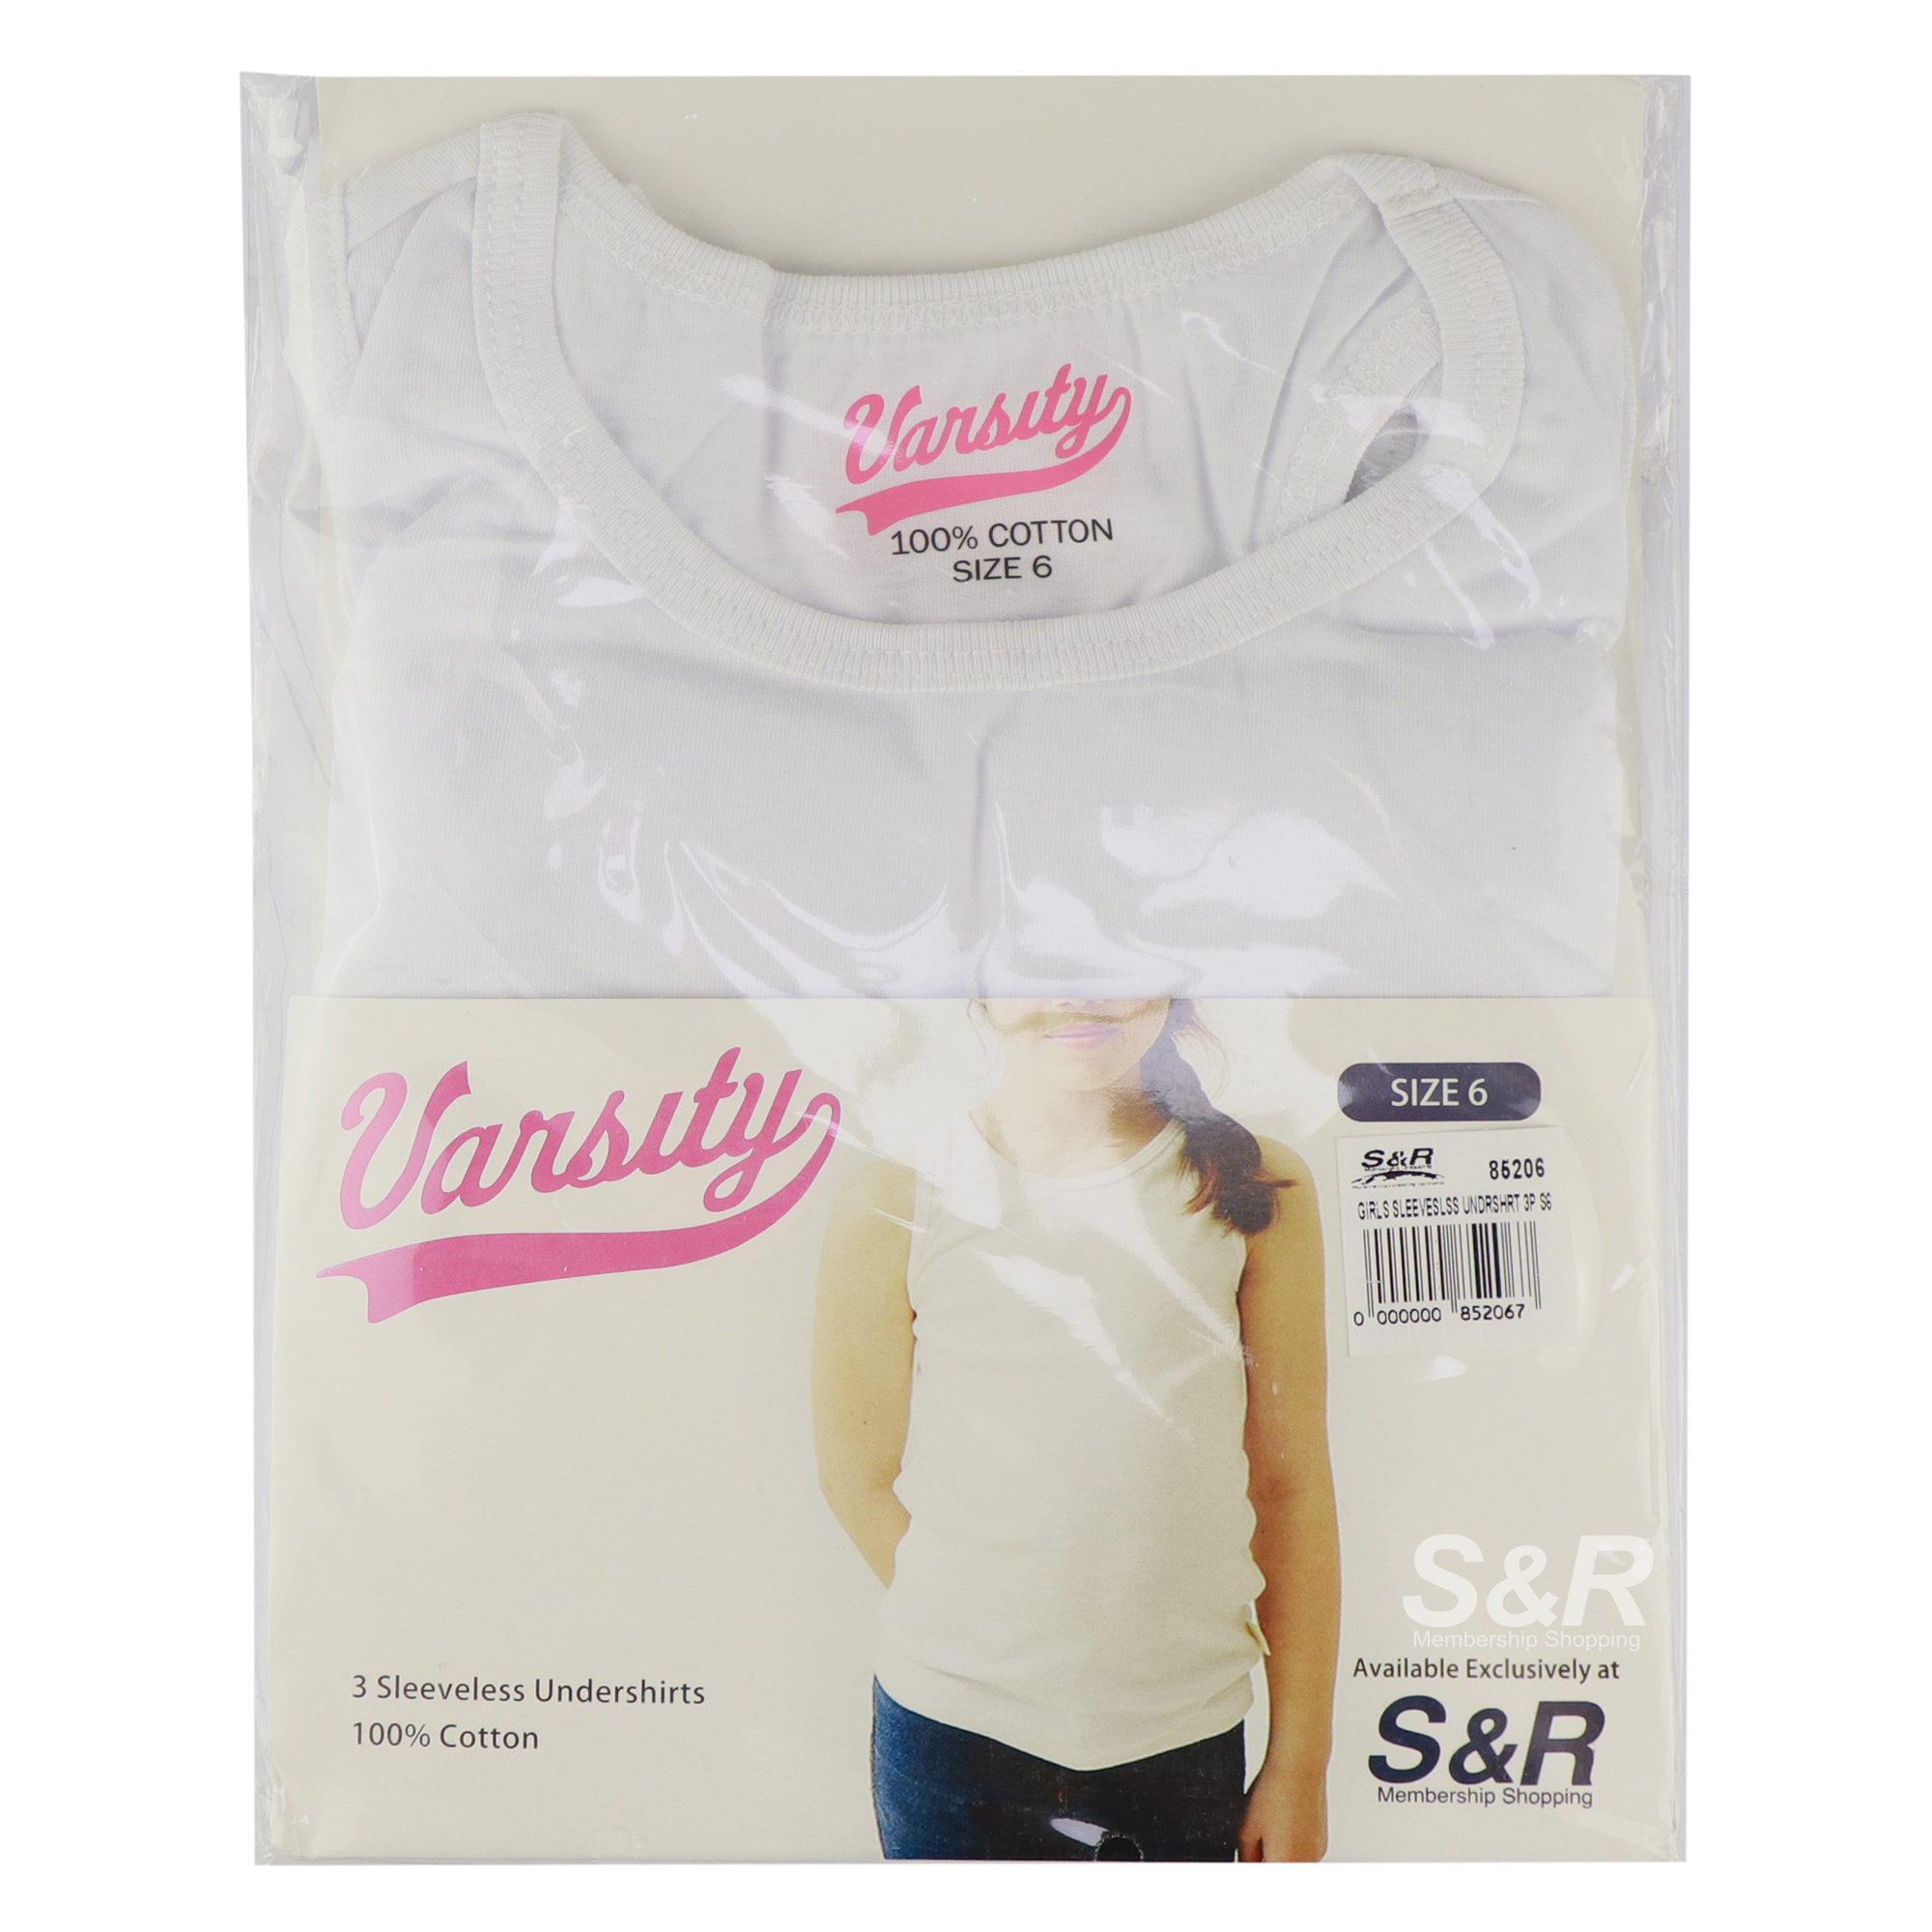 Varsity Girls Size 6 Sleeveless Undershirt 3pcs